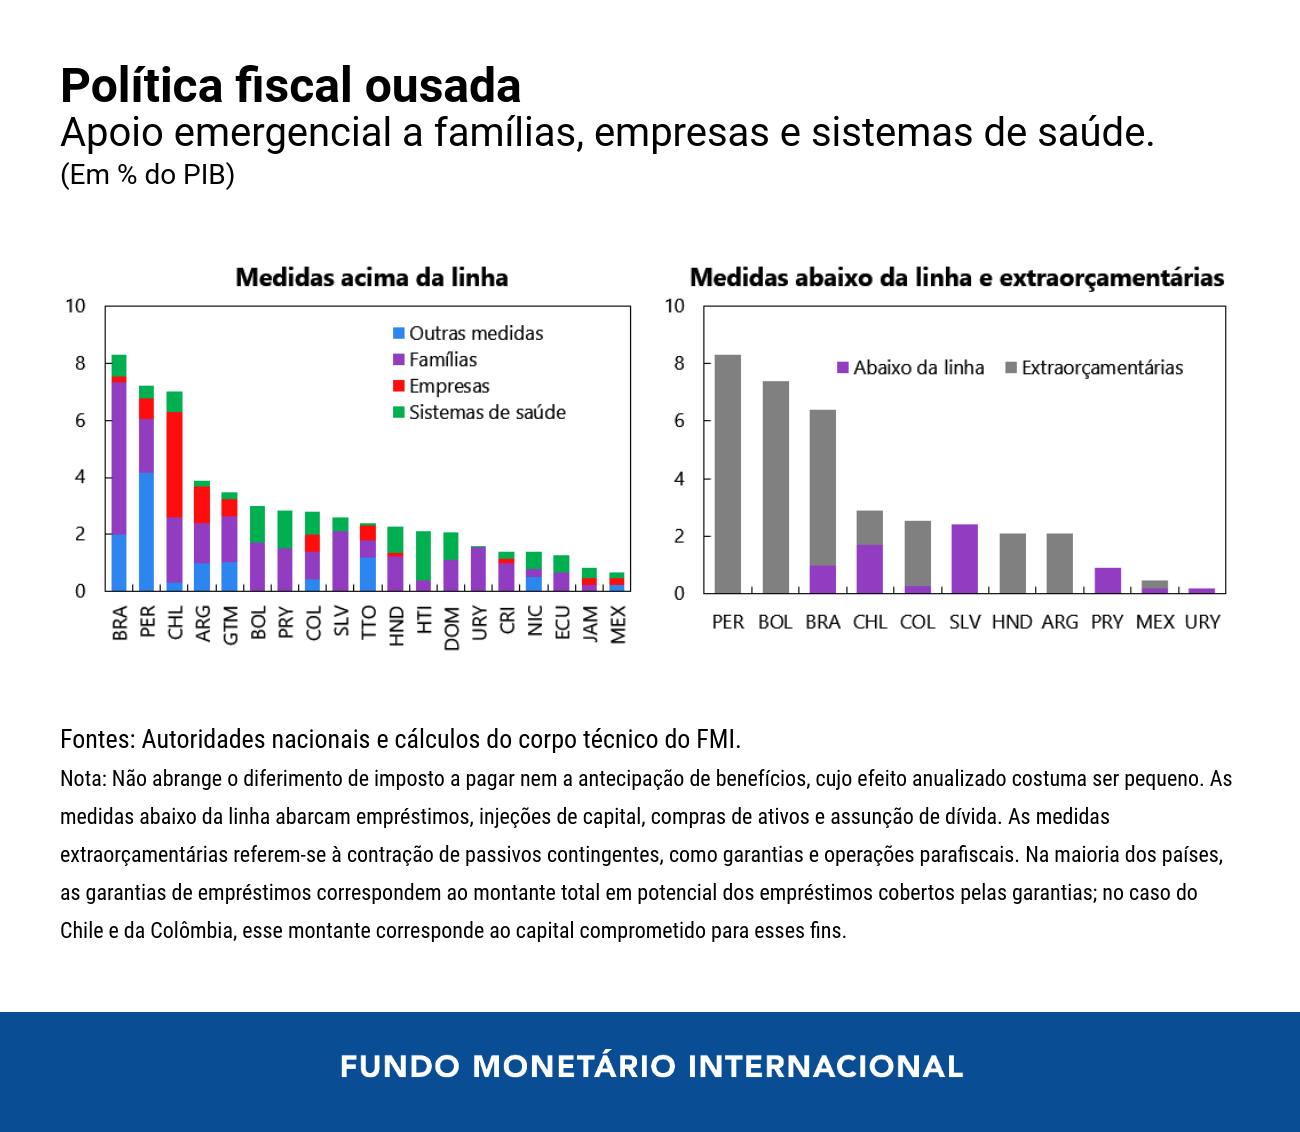 01125-por-blog-lac-fiscal-chart-1